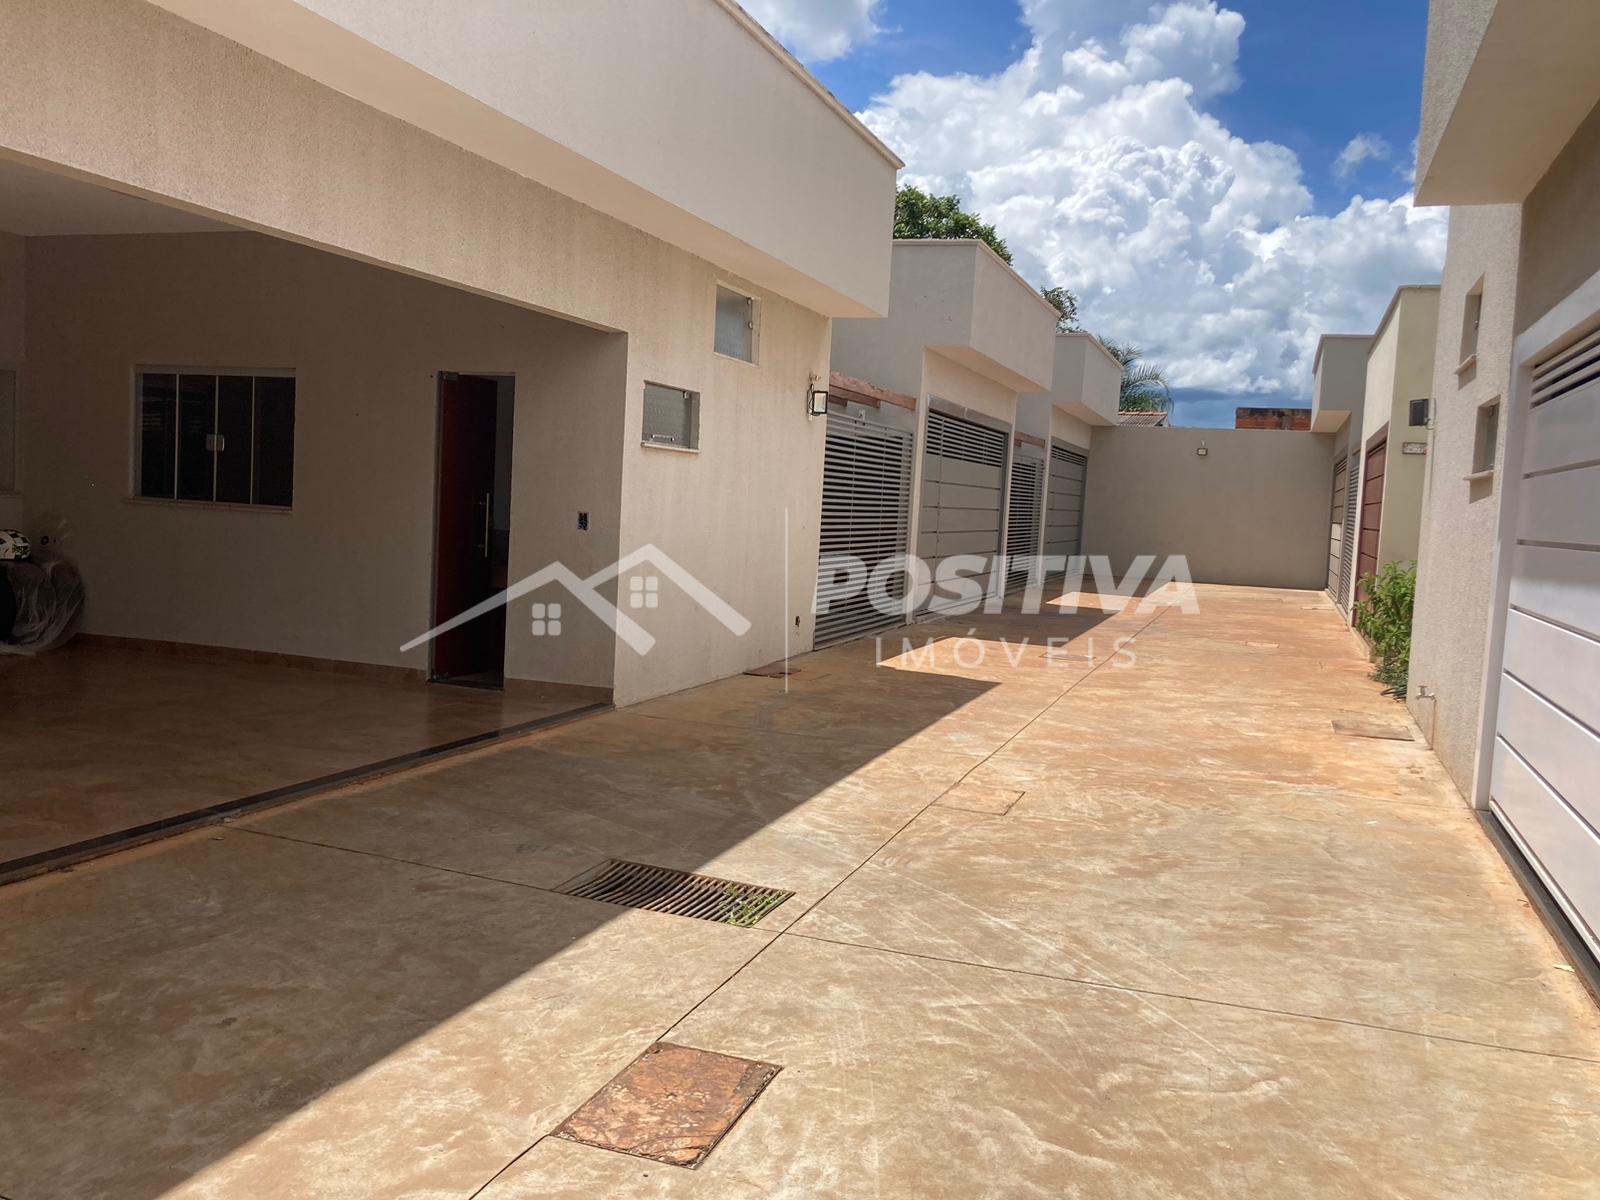 Casa com 3 dormitórios à venda, DE LURDES, RIO VERDE - GO